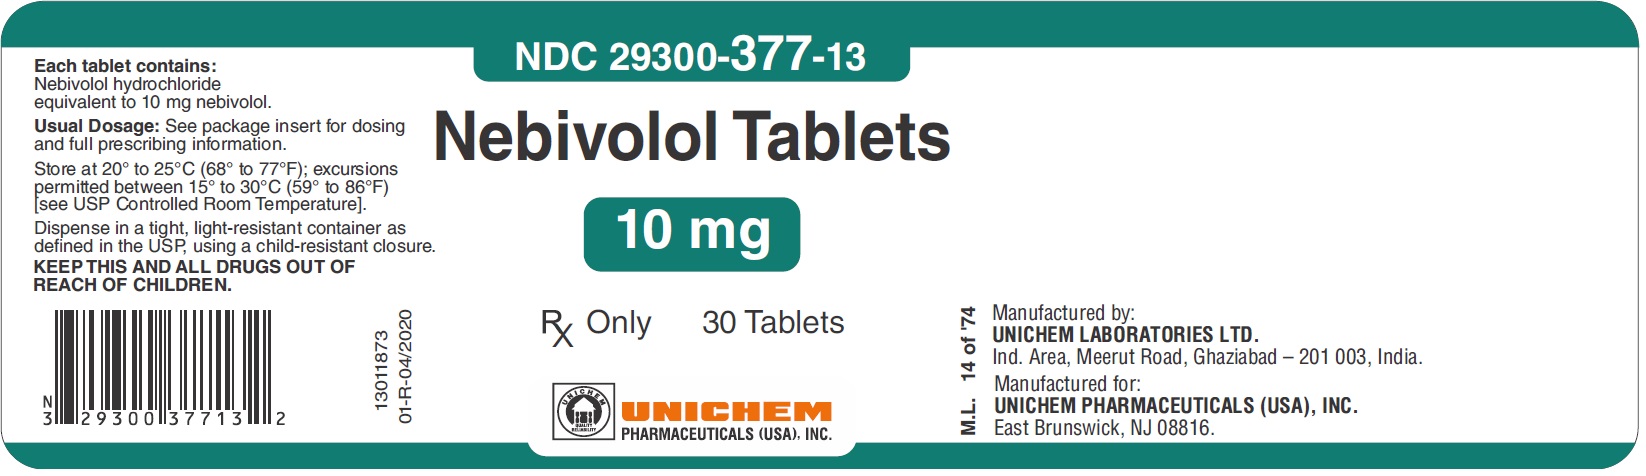 Nebivolol Tablets 10 mg 30 Tablets